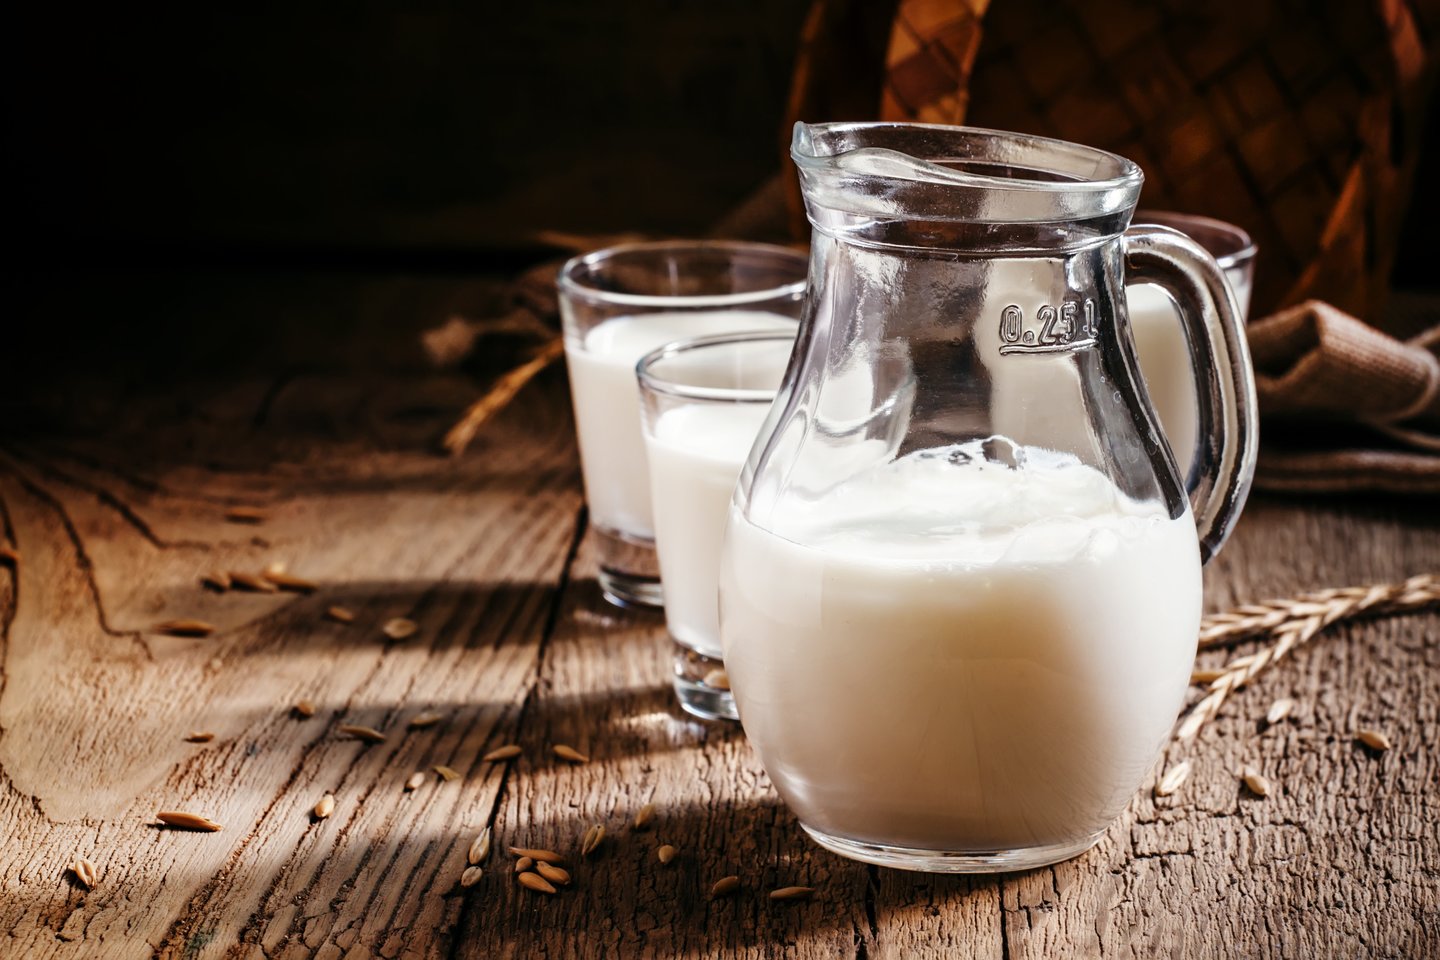  Remiantis didžiausiu iki šiol atliktu tyrimu apie žmonių tolerancijos laktozei evoliuciją, pieno vartojimas buvo plačiai paplitęs tūkstančius metų prieš tai, kai žmonės sugebėjo jį tinkamai suskaidyti.<br> 123rf nuotr.